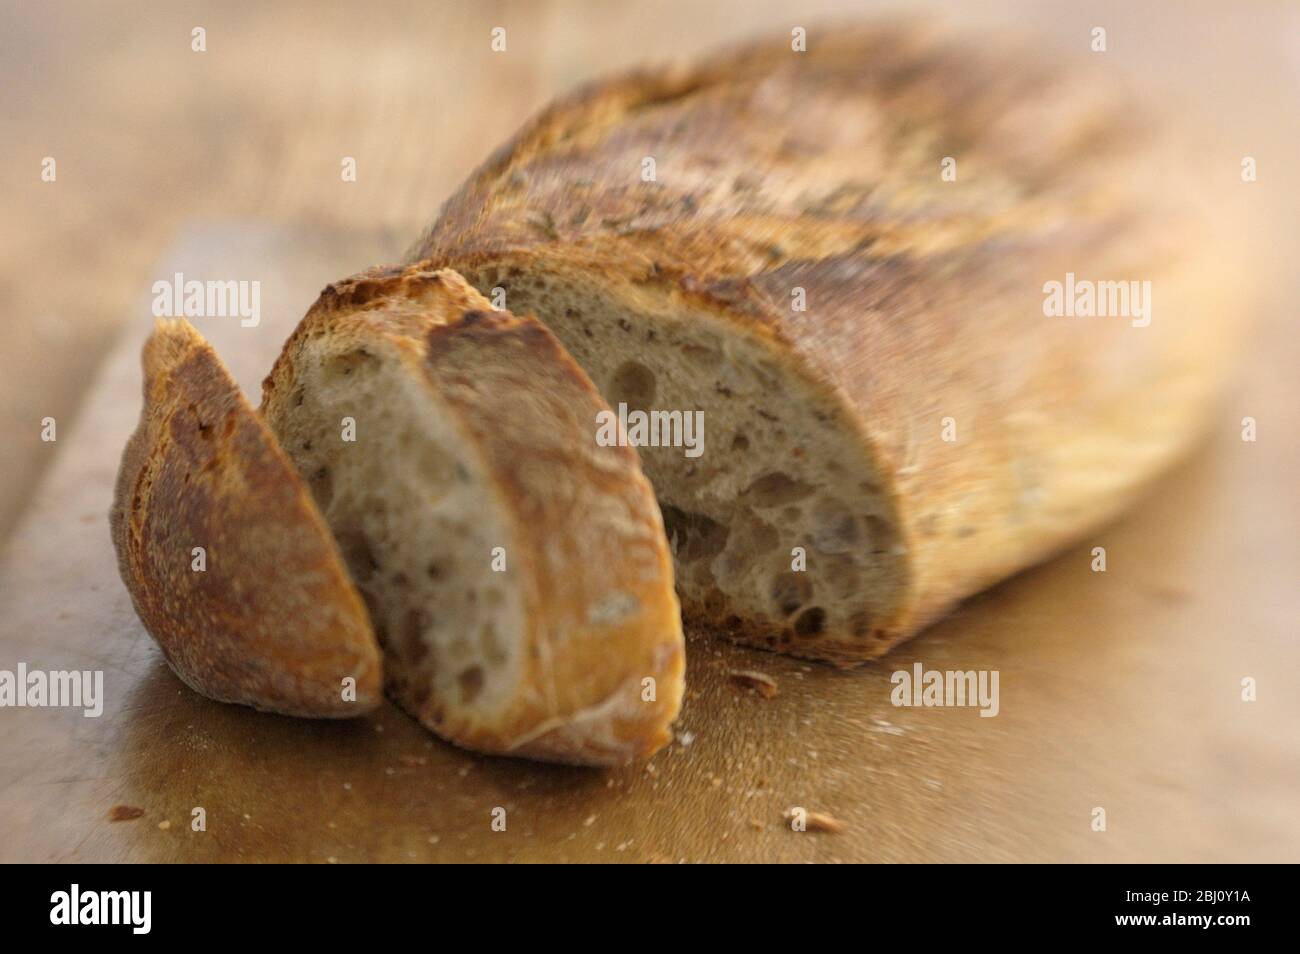 Italienisches Rosmarinsauerteigbrot aus Apulien, auf braunem Holzbrett, sho mit Lendenbaby-Linse für Blur-Effekt - Stockfoto